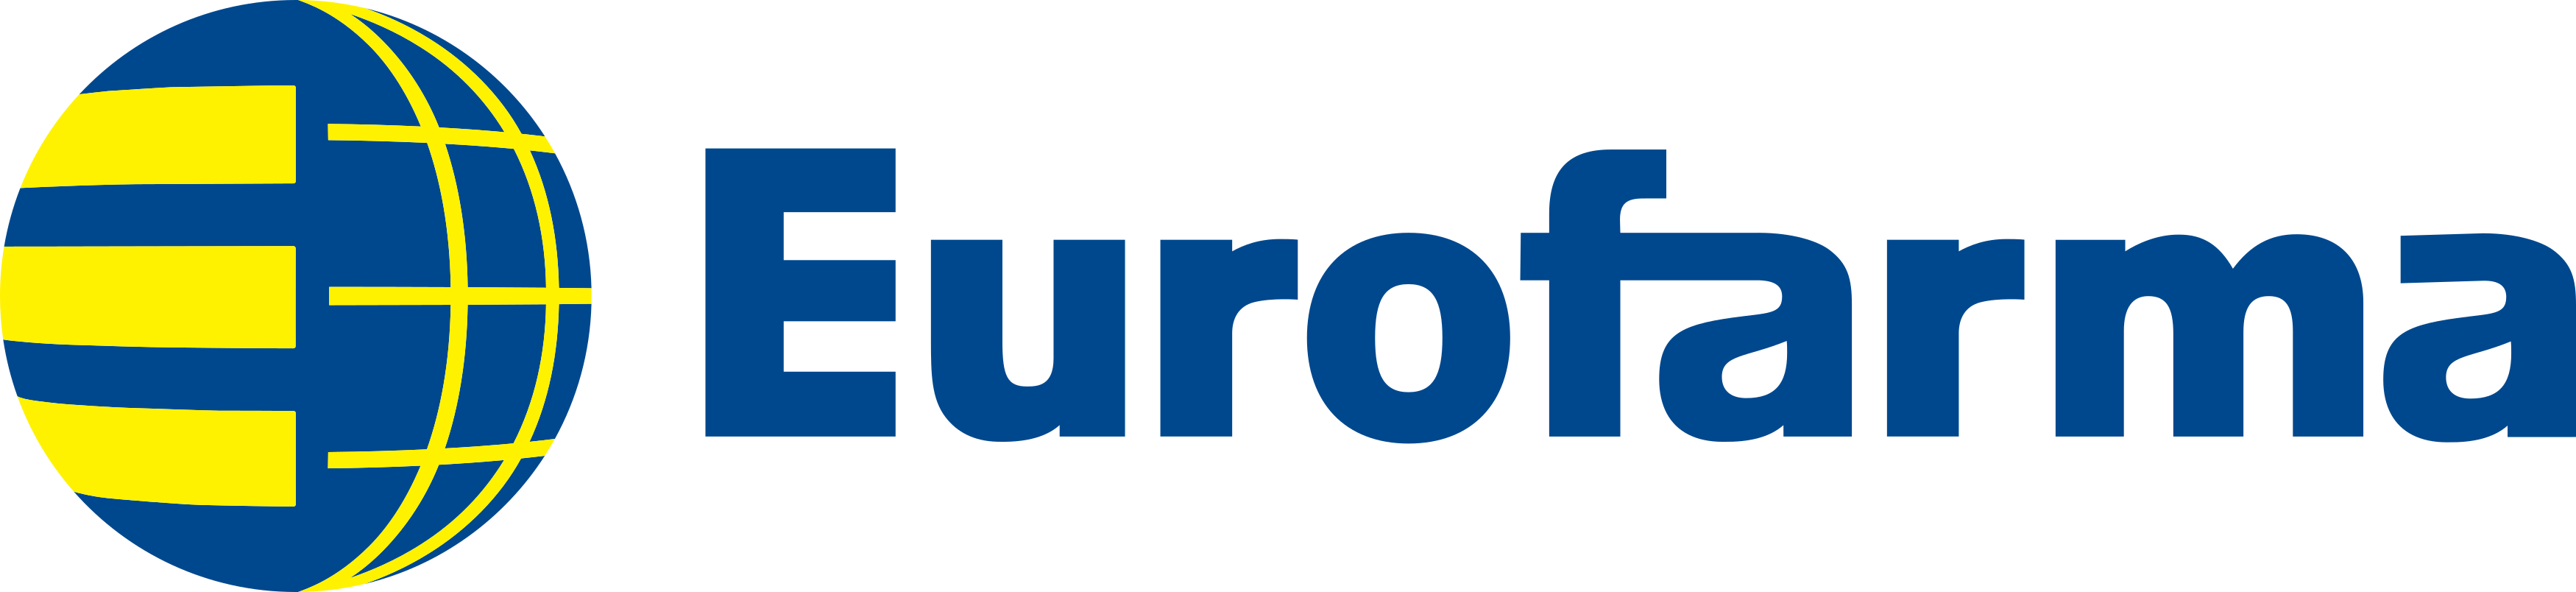 Uniforme eurofarma